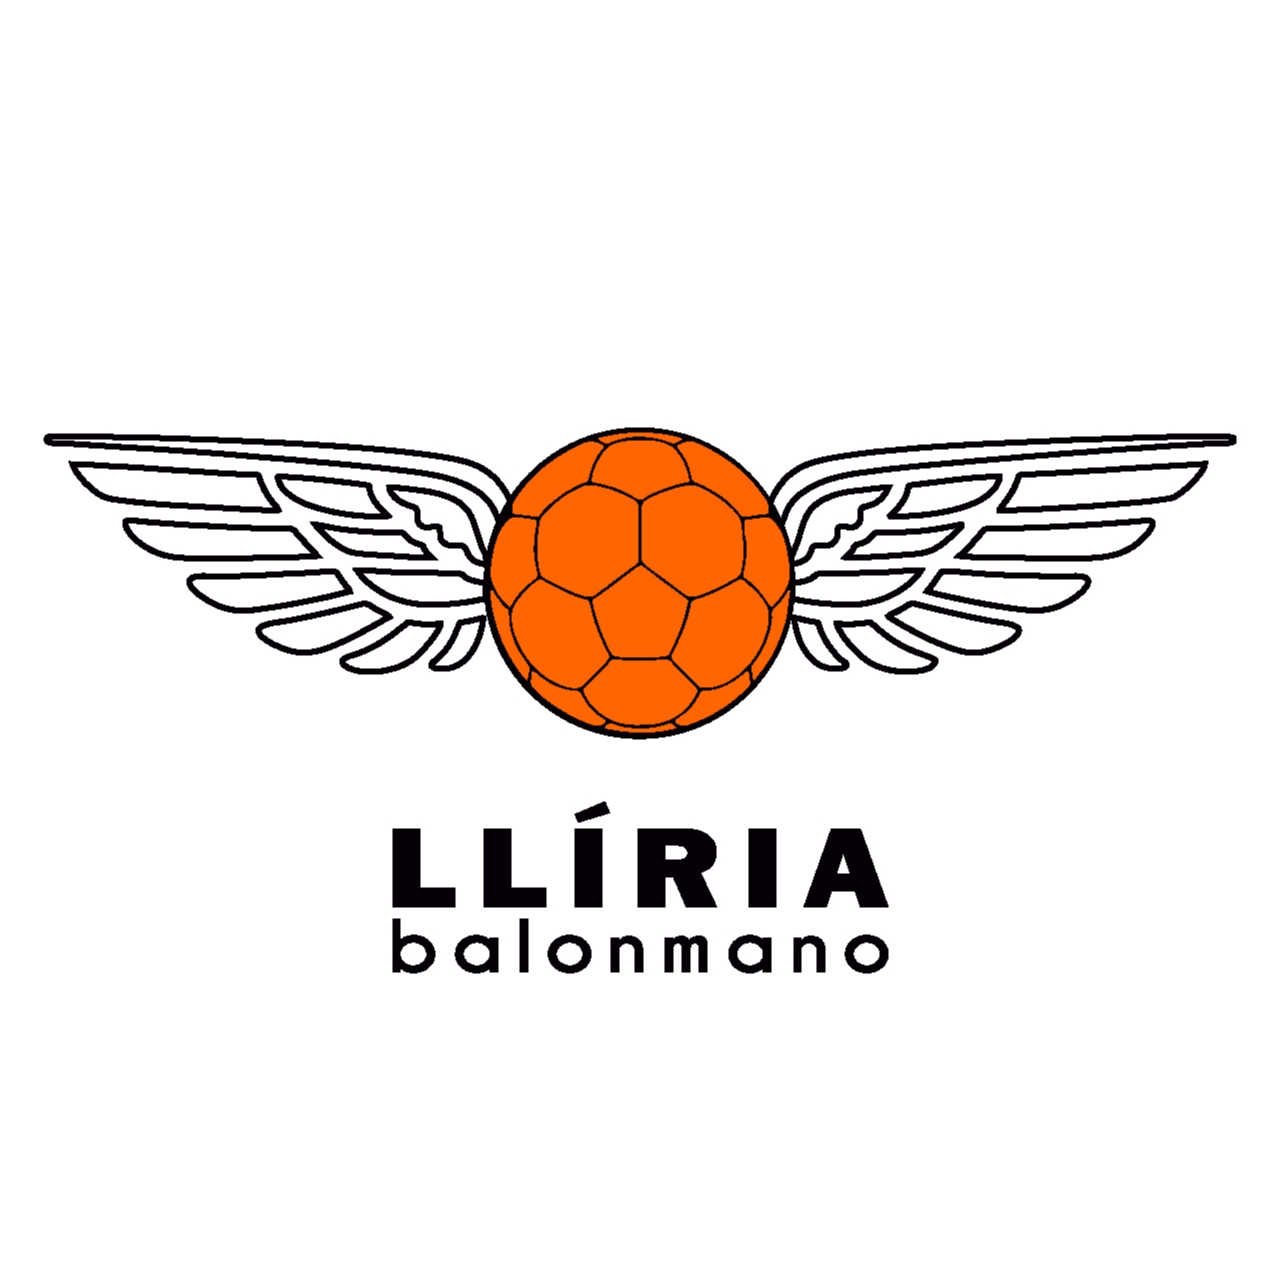 CLUB BALONMANO LLIRIA